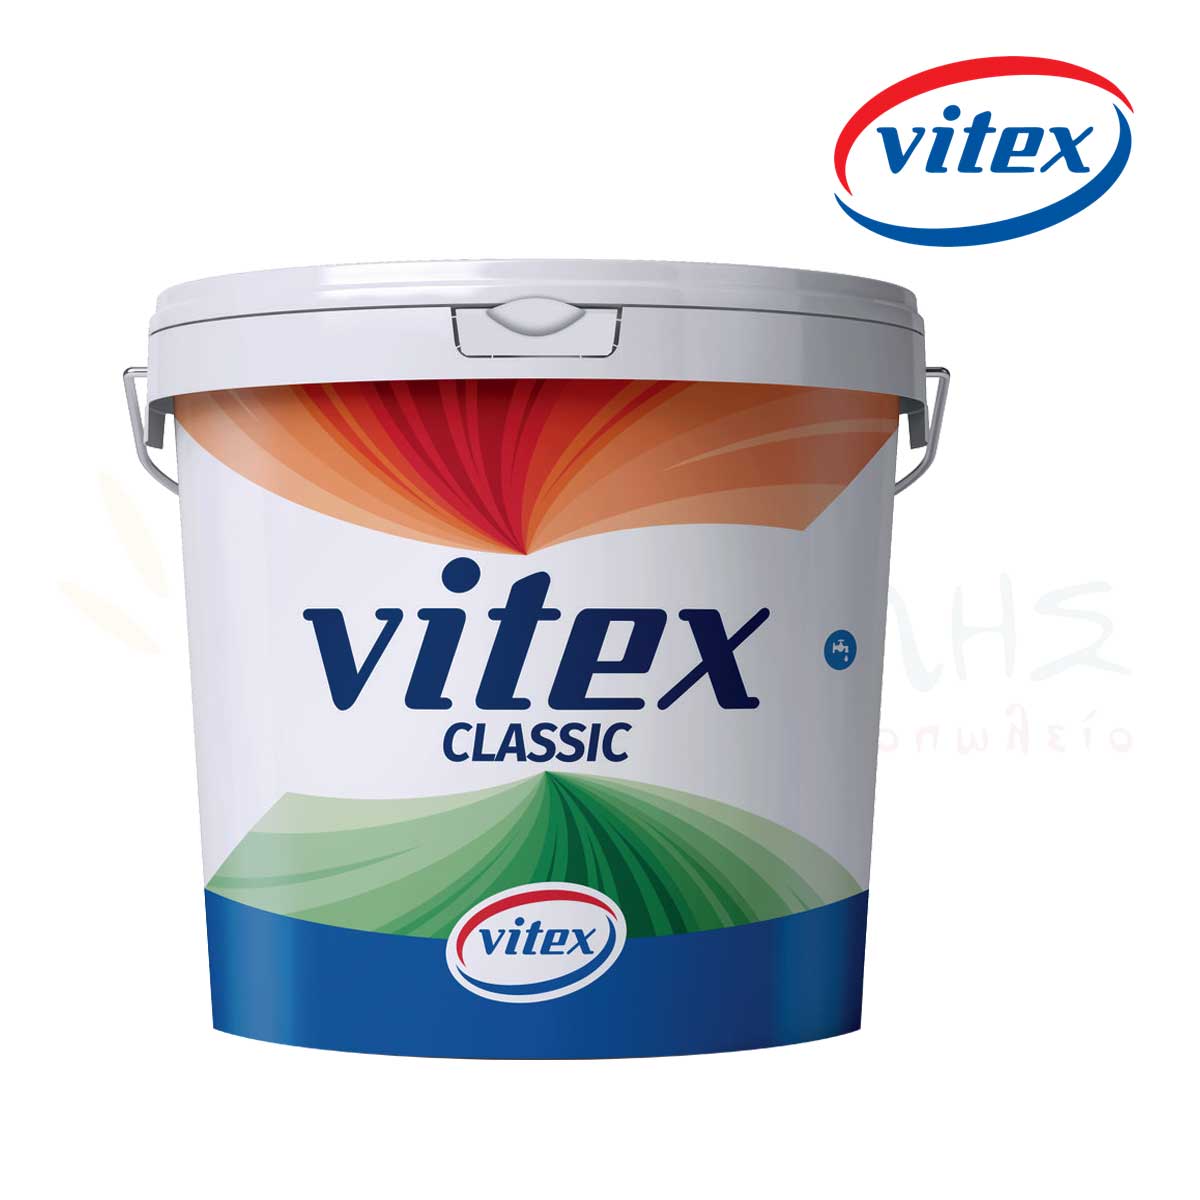 Vitex Classic - Vitex